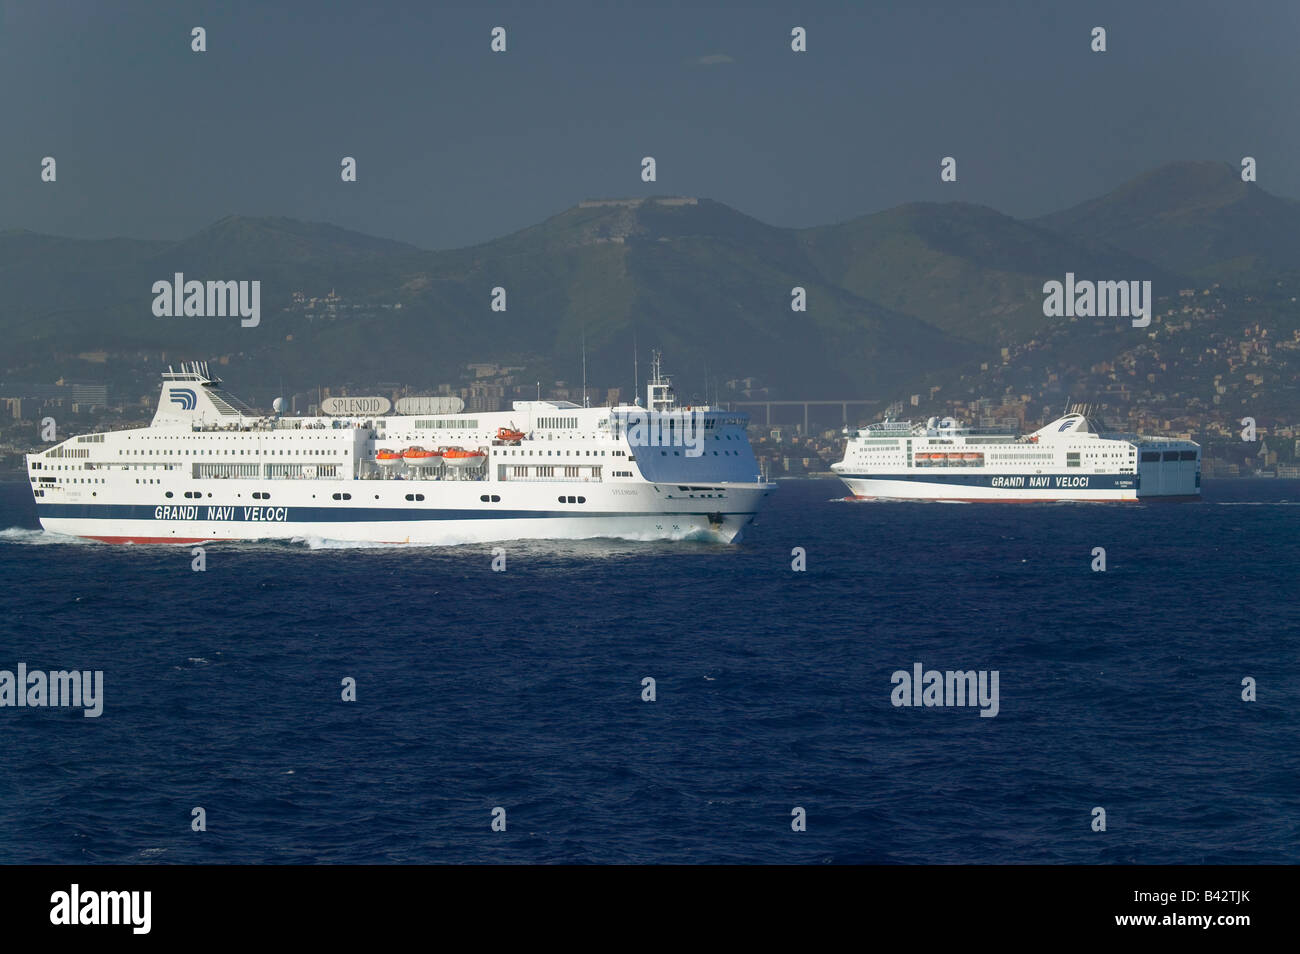 Grandi Navi Veloci Ferryboat off coast of Genoa, Italy Stock Photo